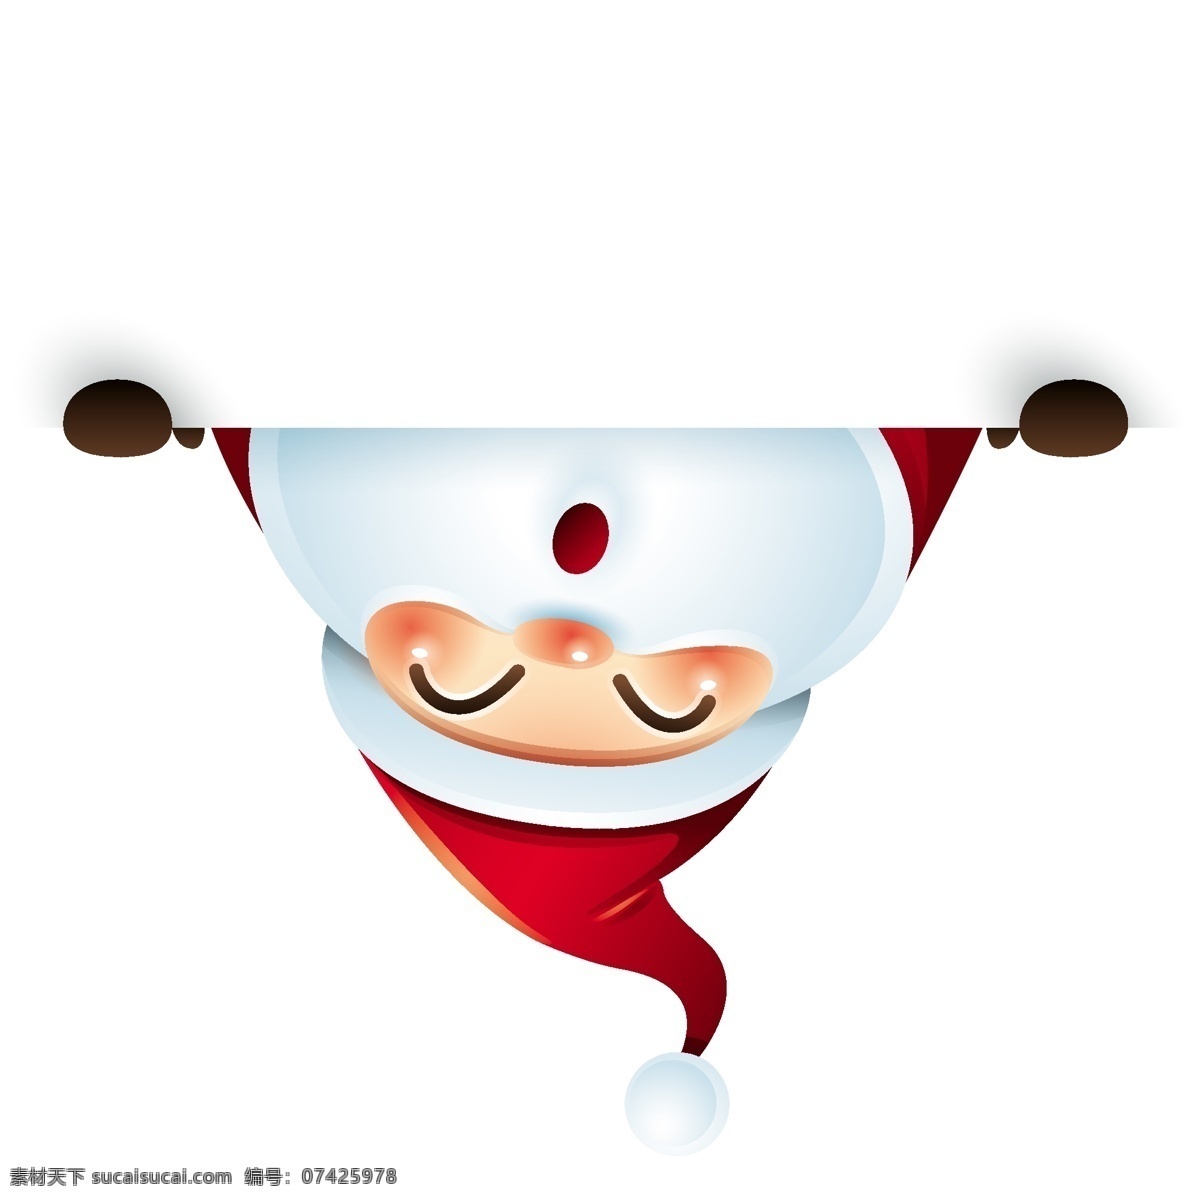 卡通 装饰 圣诞节 老人 矢量 倒立 红色 白胡子 人物 形象 节日